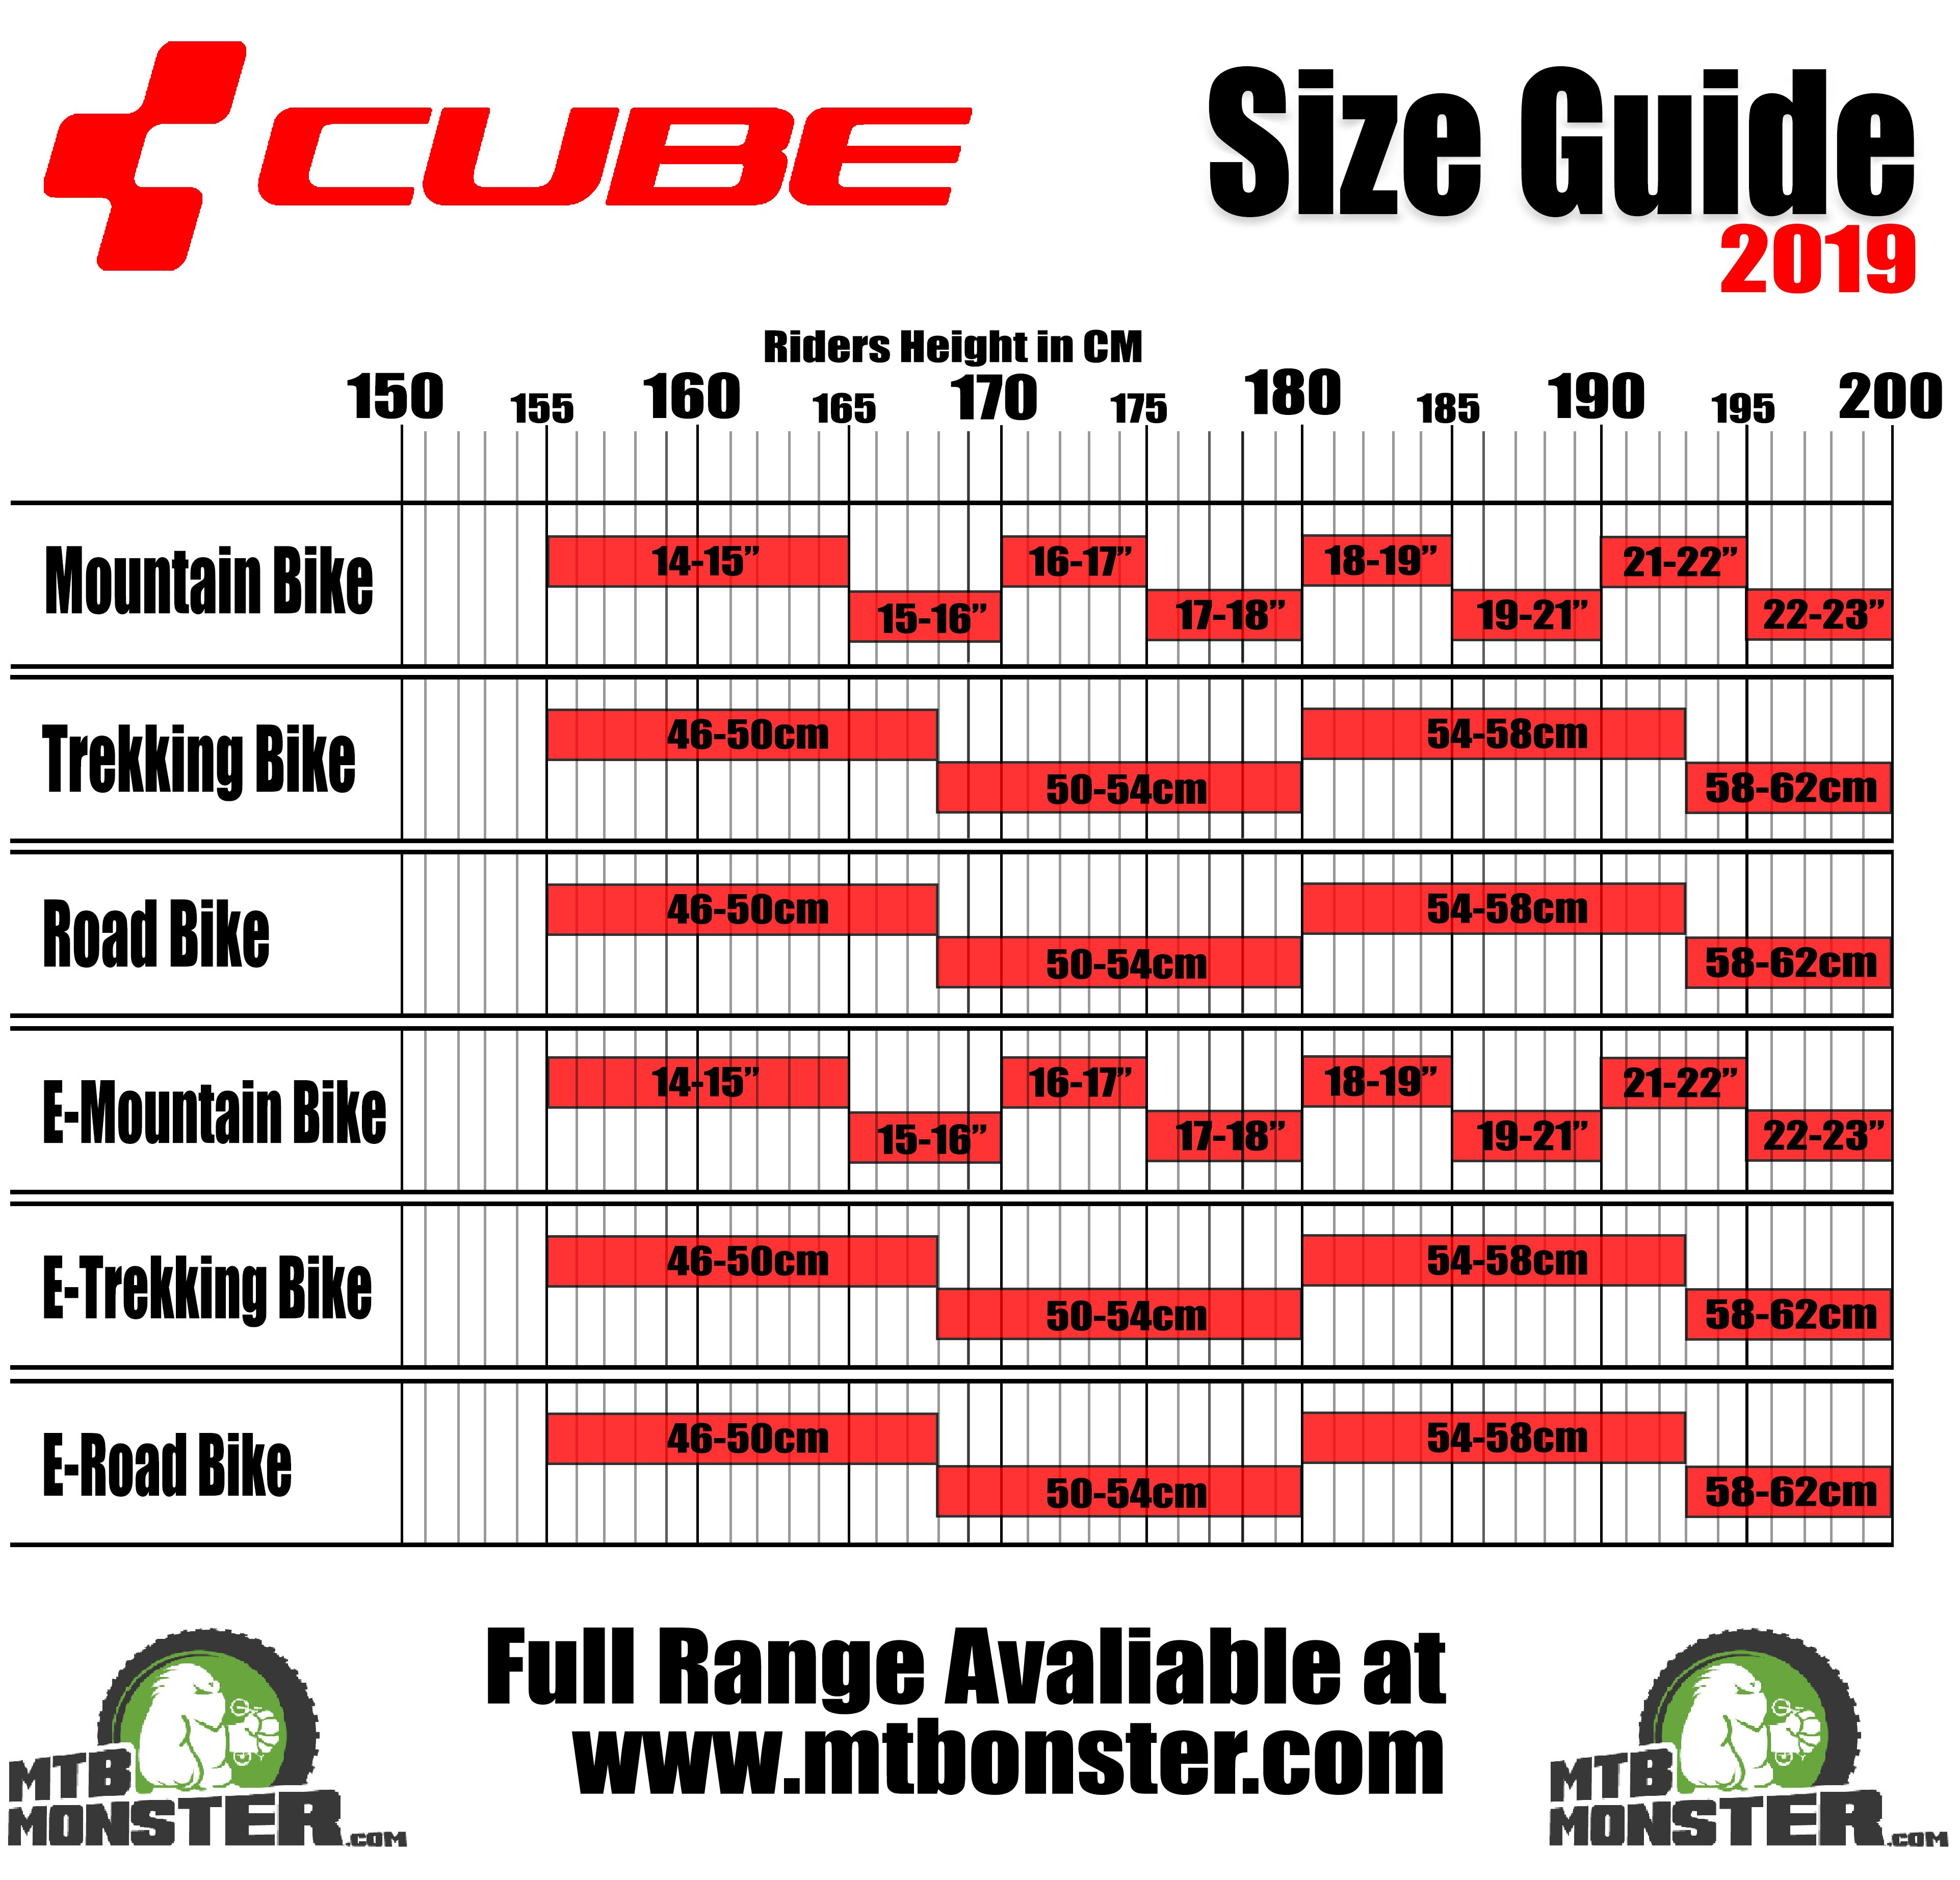 Cube Bikes Size Guide - Cube Bikes 2019 Size GuiDe 2